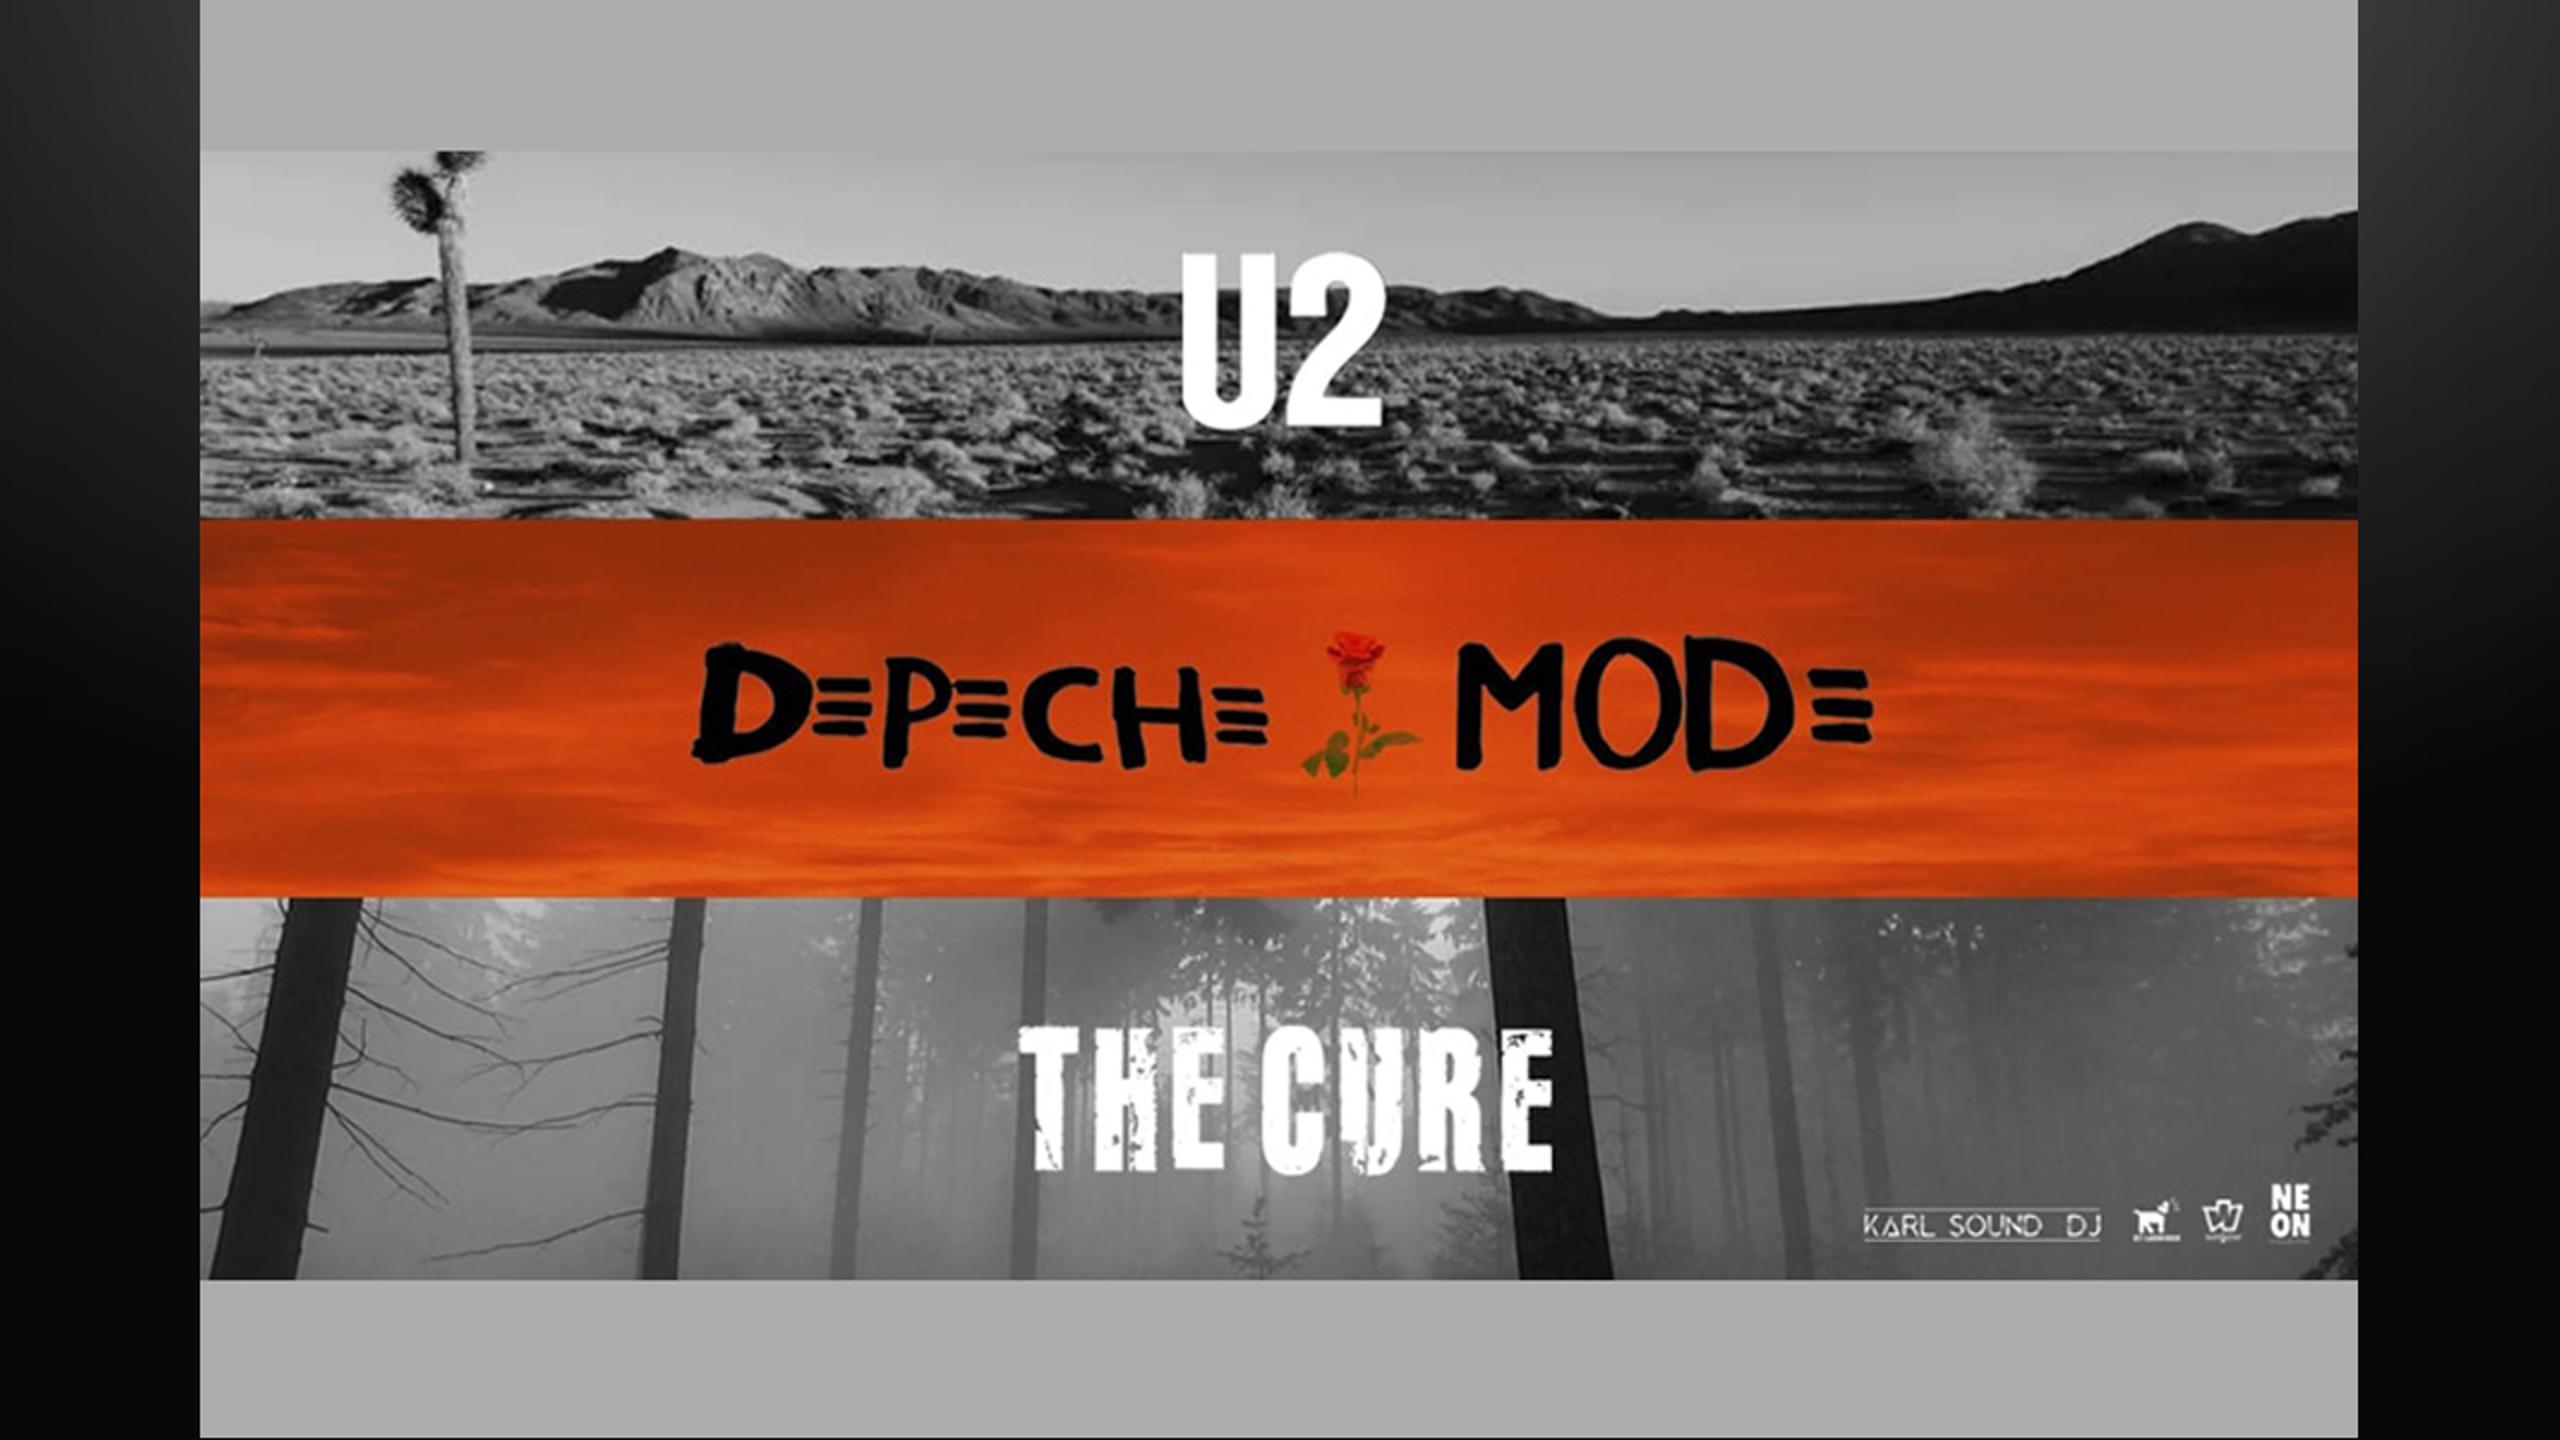 Fotografía promocional de Concierto The Cure, U2 & Depeche Mode by Neon Collective en Málaga